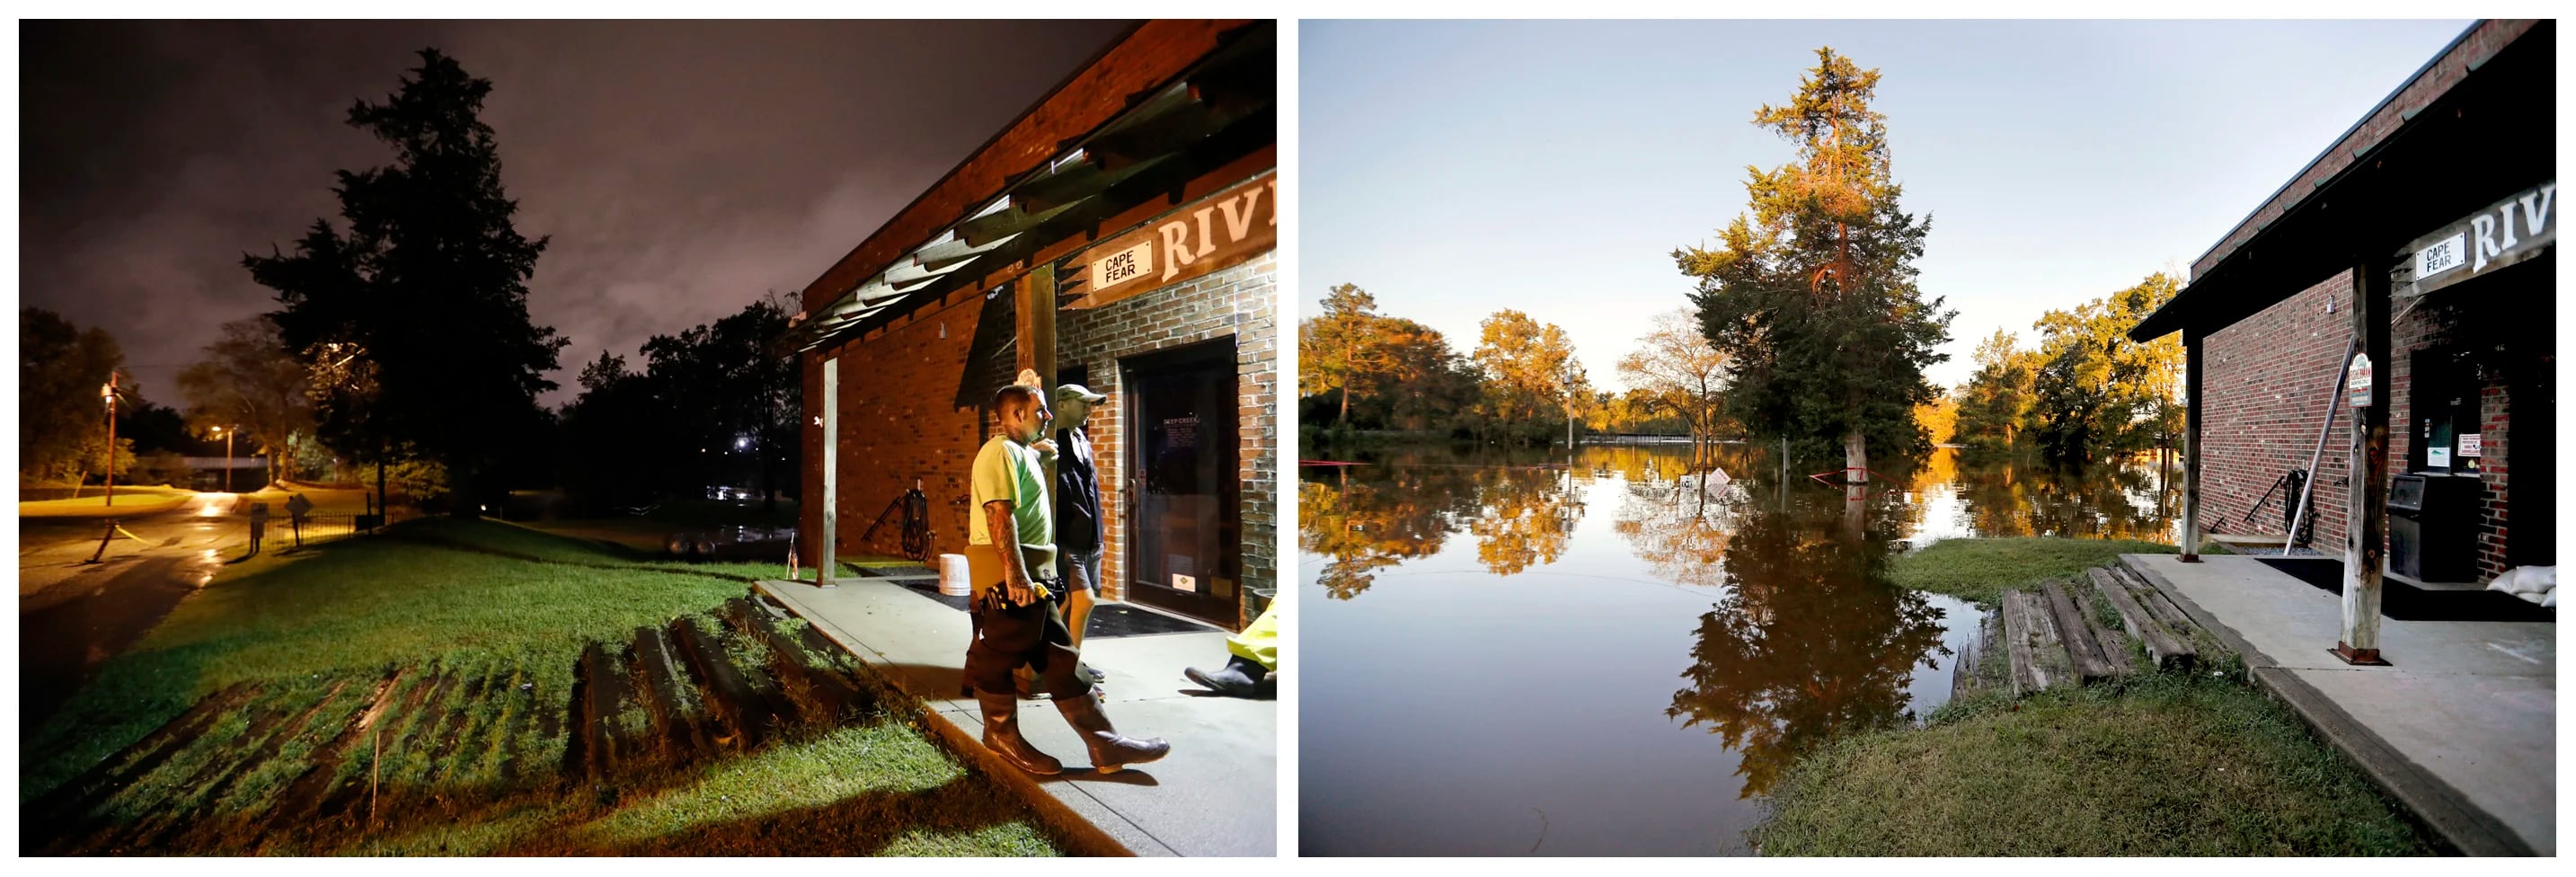 Esta combinación de fotografías muestra el río Cape Fear al fondo, detrás de una tienda de cebos y aparejos, el 16 de septiembre de 2018, a la izquierda, y después el 19 de septiembre, a la derecha, con zonas inundadas, tras el paso del huracán Florence, en Fayetteville, Carolina del Norte. (AP Foto/David Goldman)